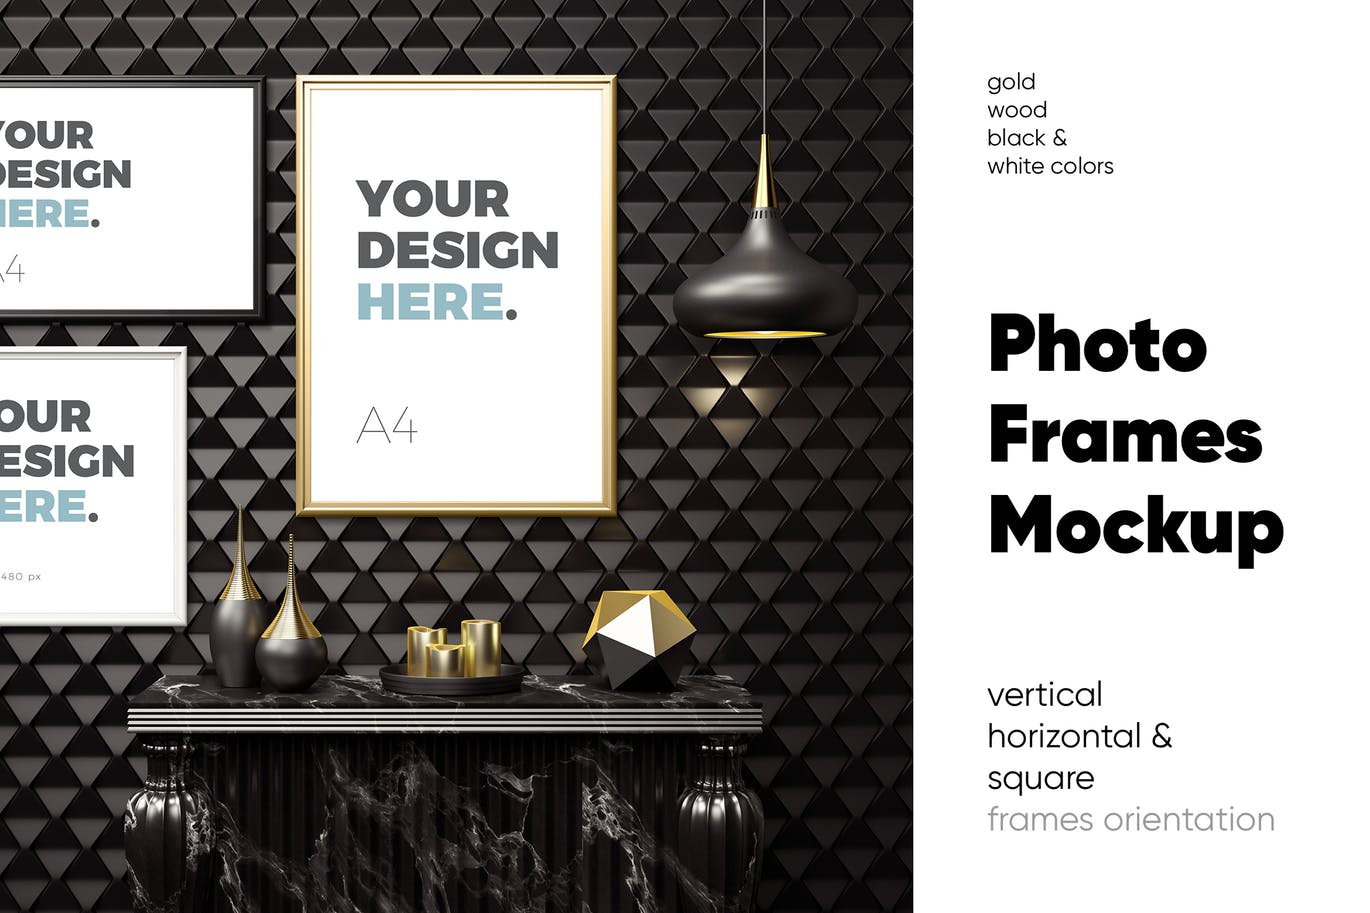 版画/海报/照片/艺术品展示样机第一素材精选模板v3 Photo Frames Mockup插图